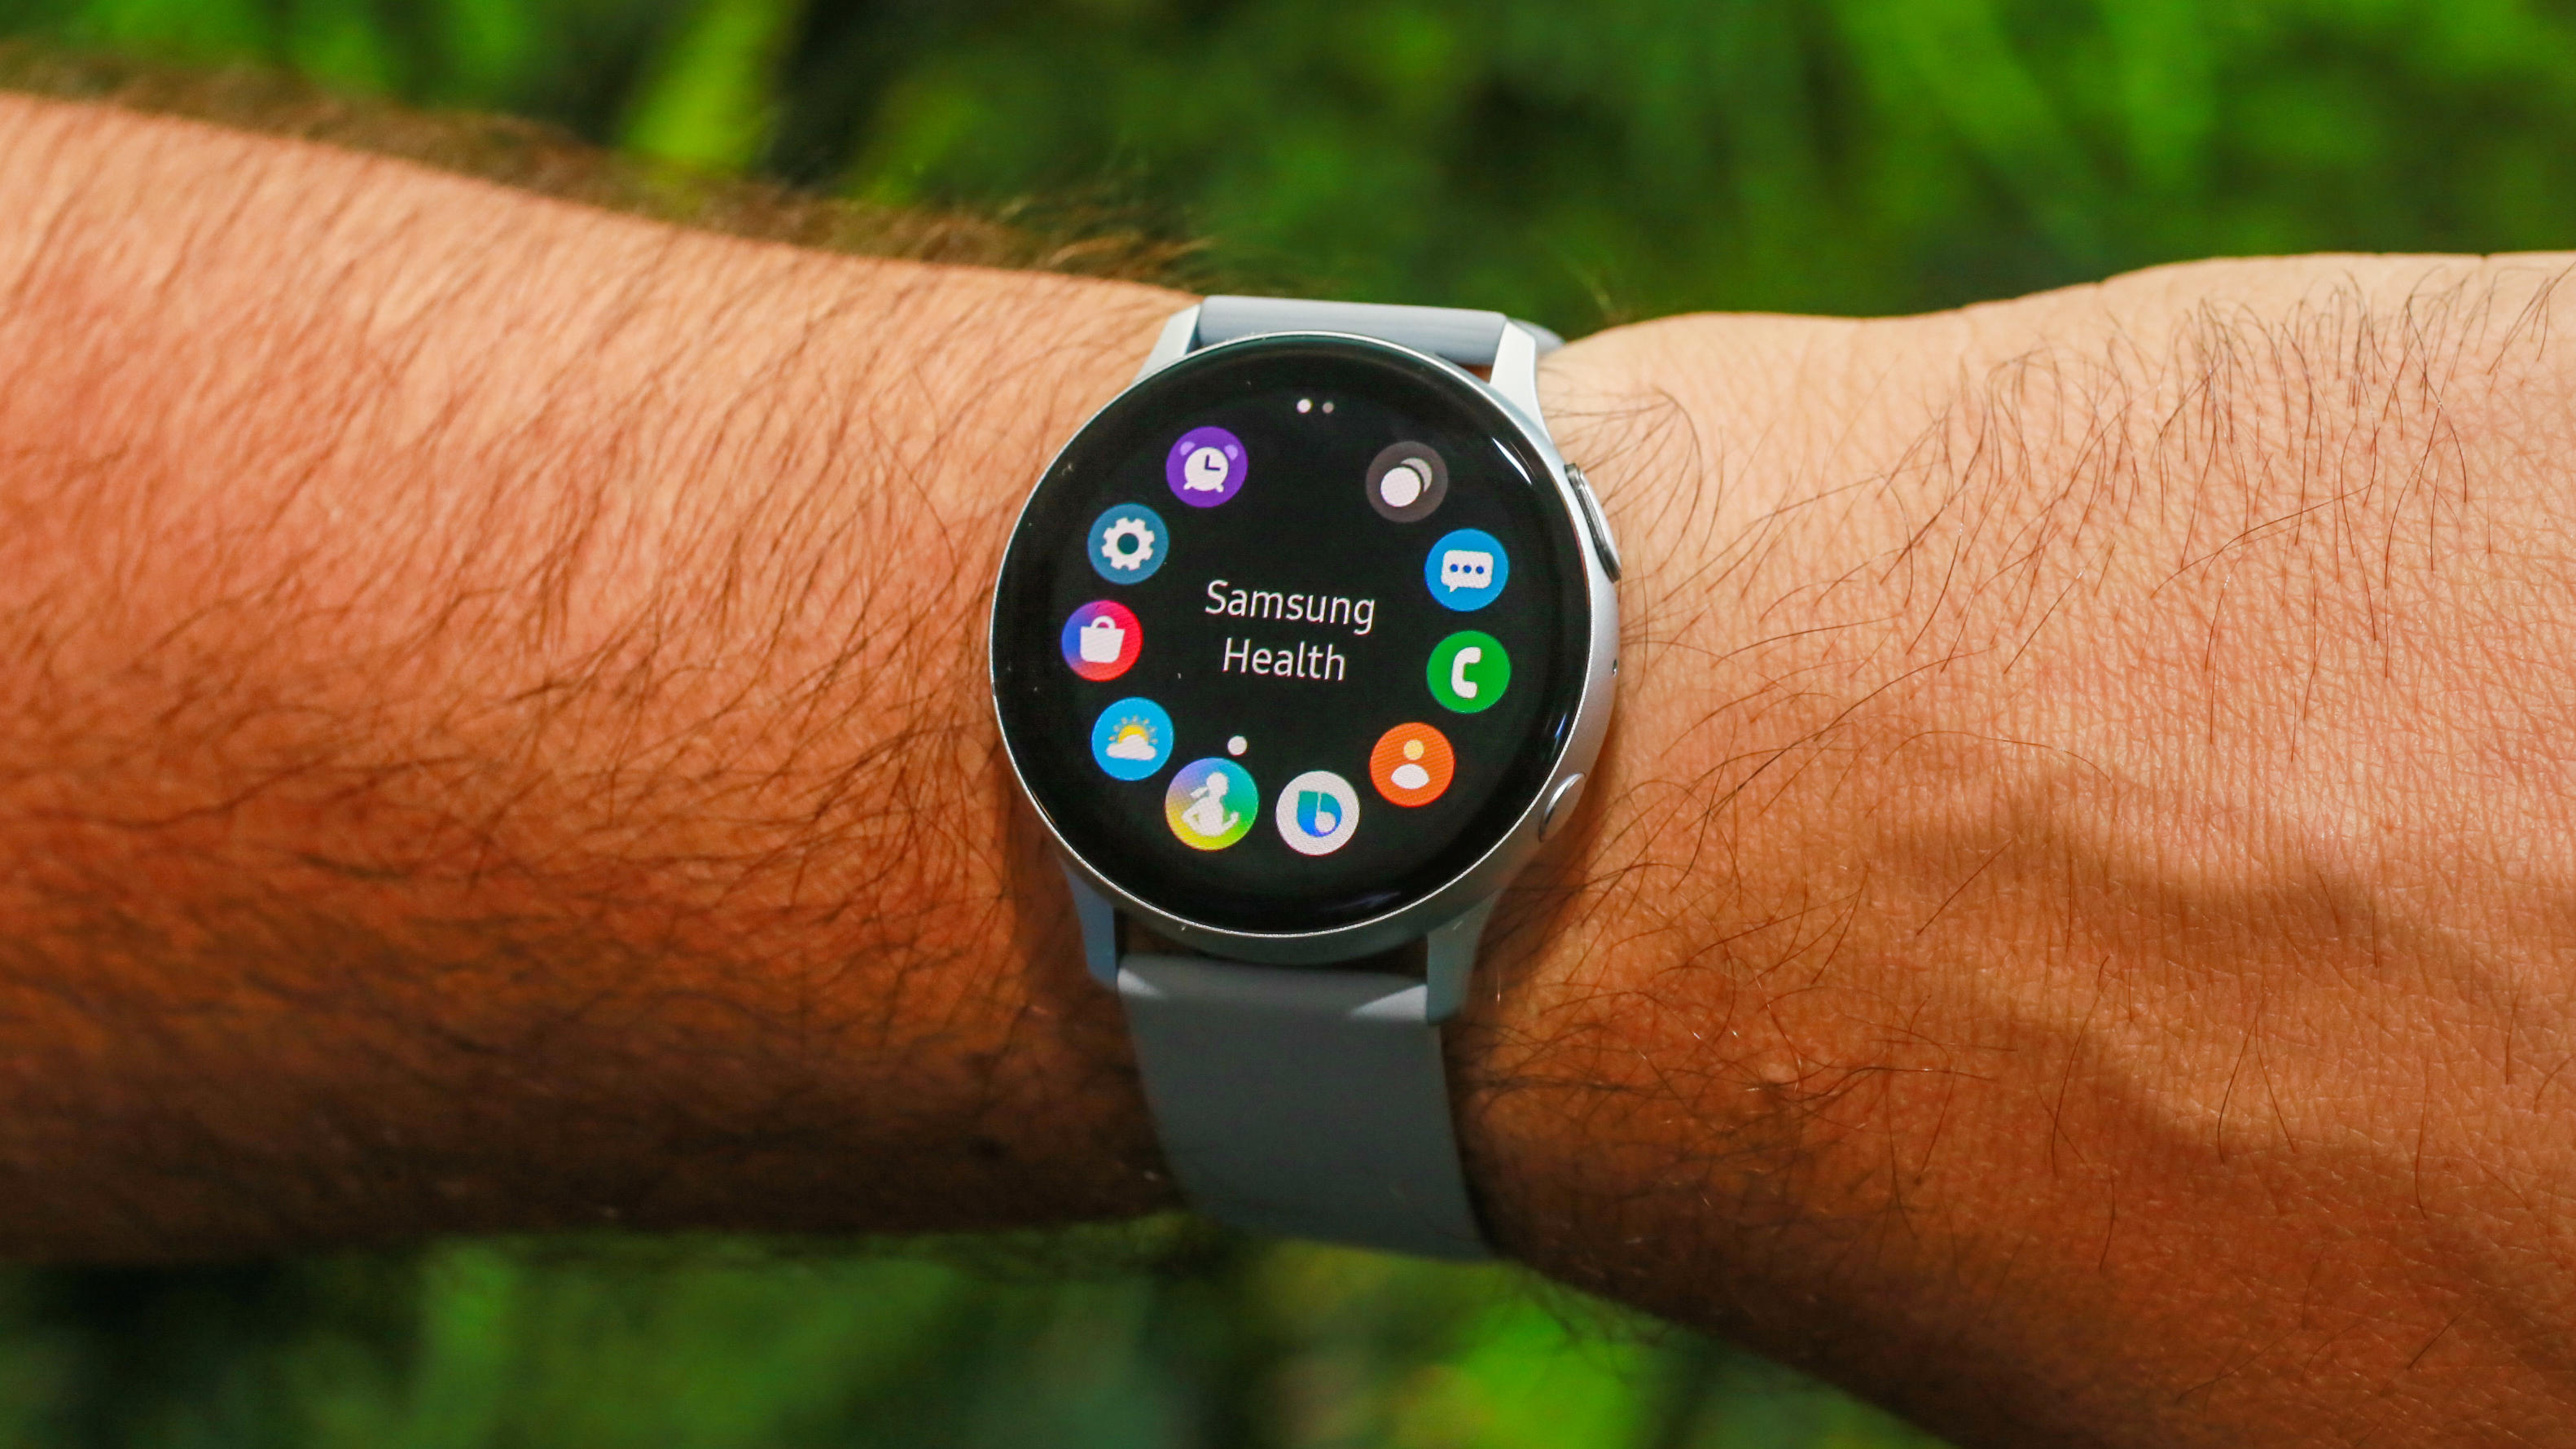 Часы смарт актив 2. Samsung Galaxy watch 2. Smart watch Samsung 2021. Galaxy watch Active 2. Смарт часы самсунг 3 2021 года.